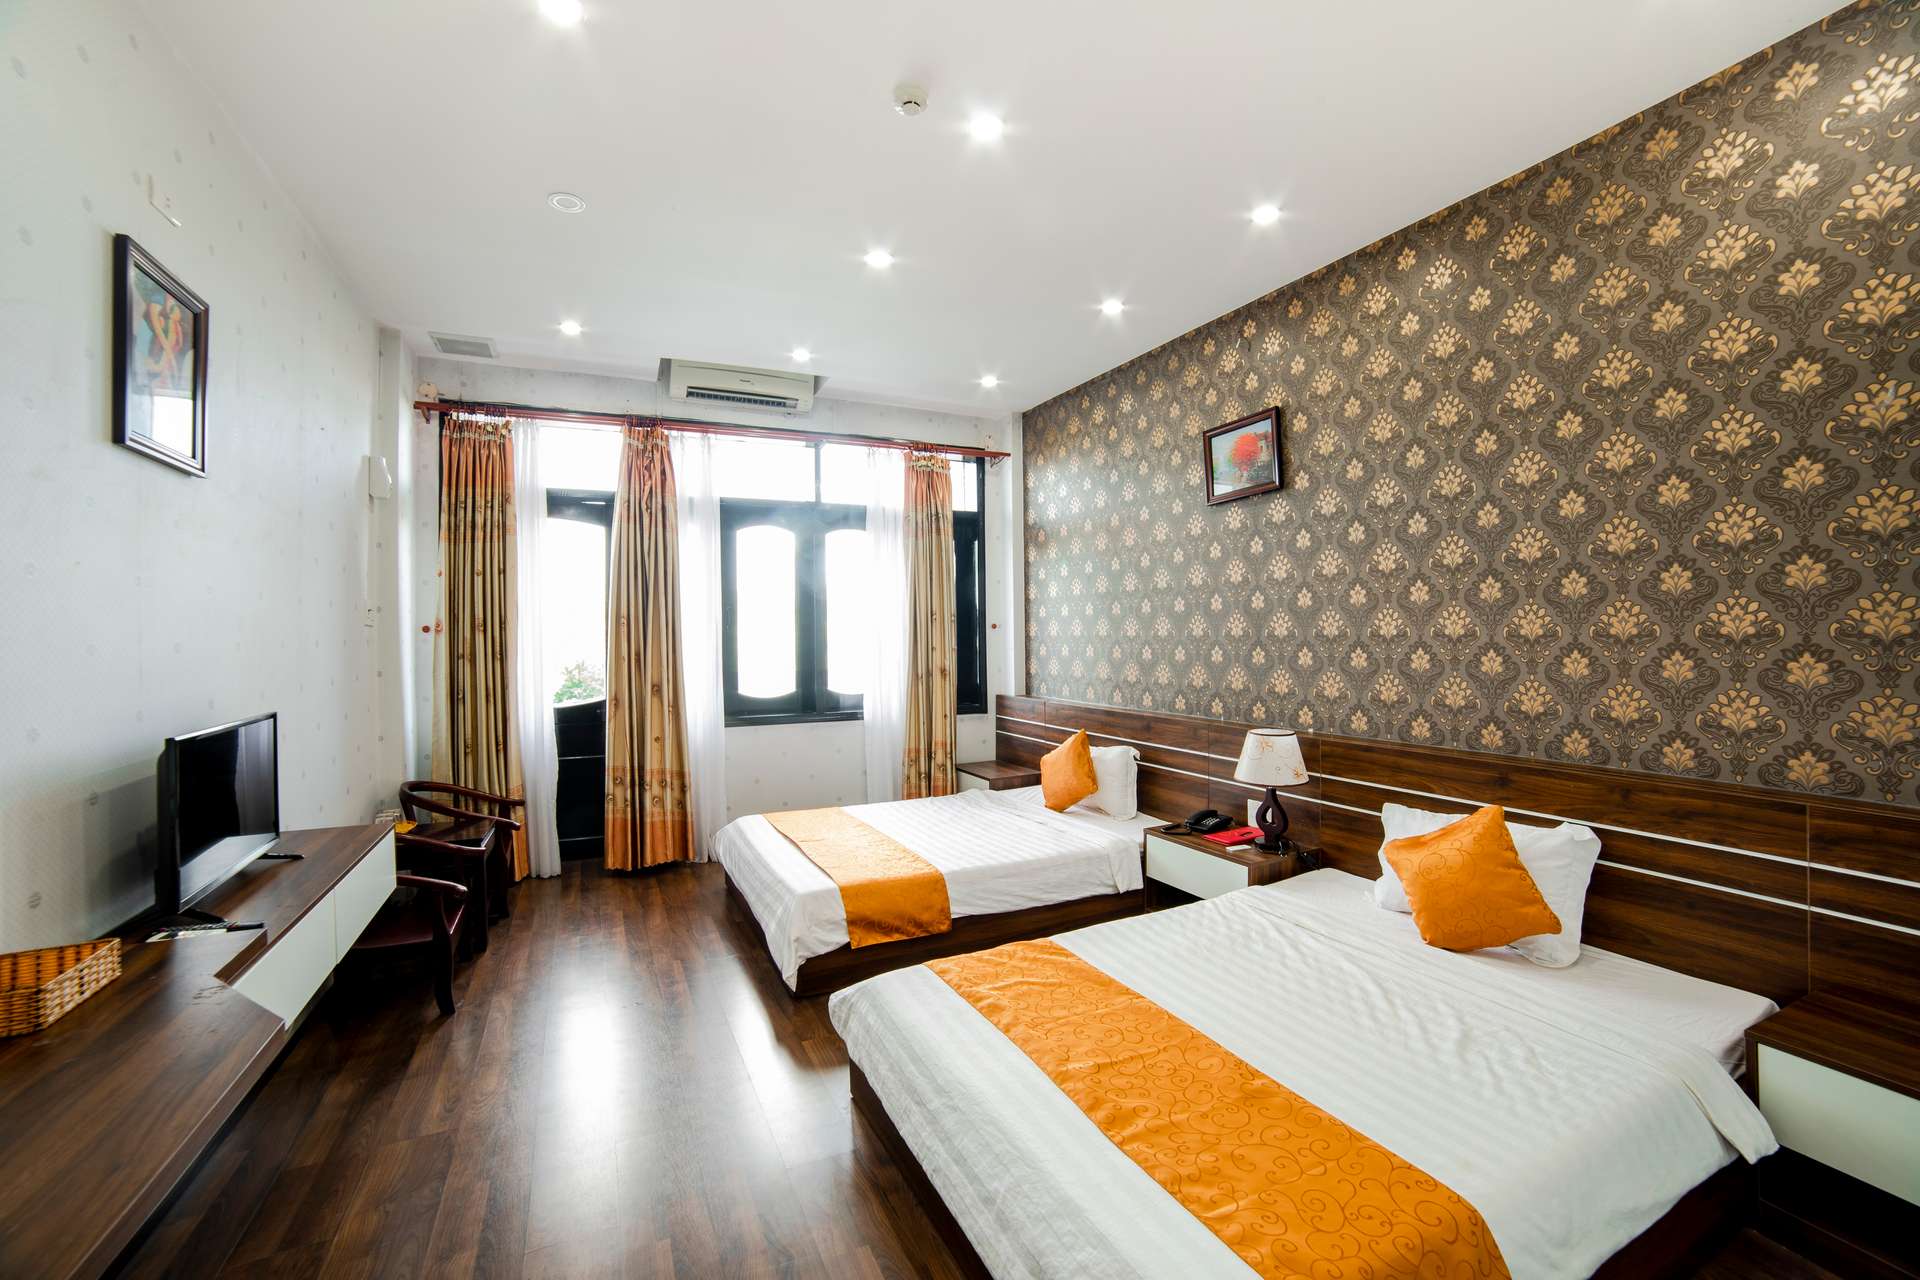 En Viet Hotel - Khách sạn 3 sao Quy Nhơn